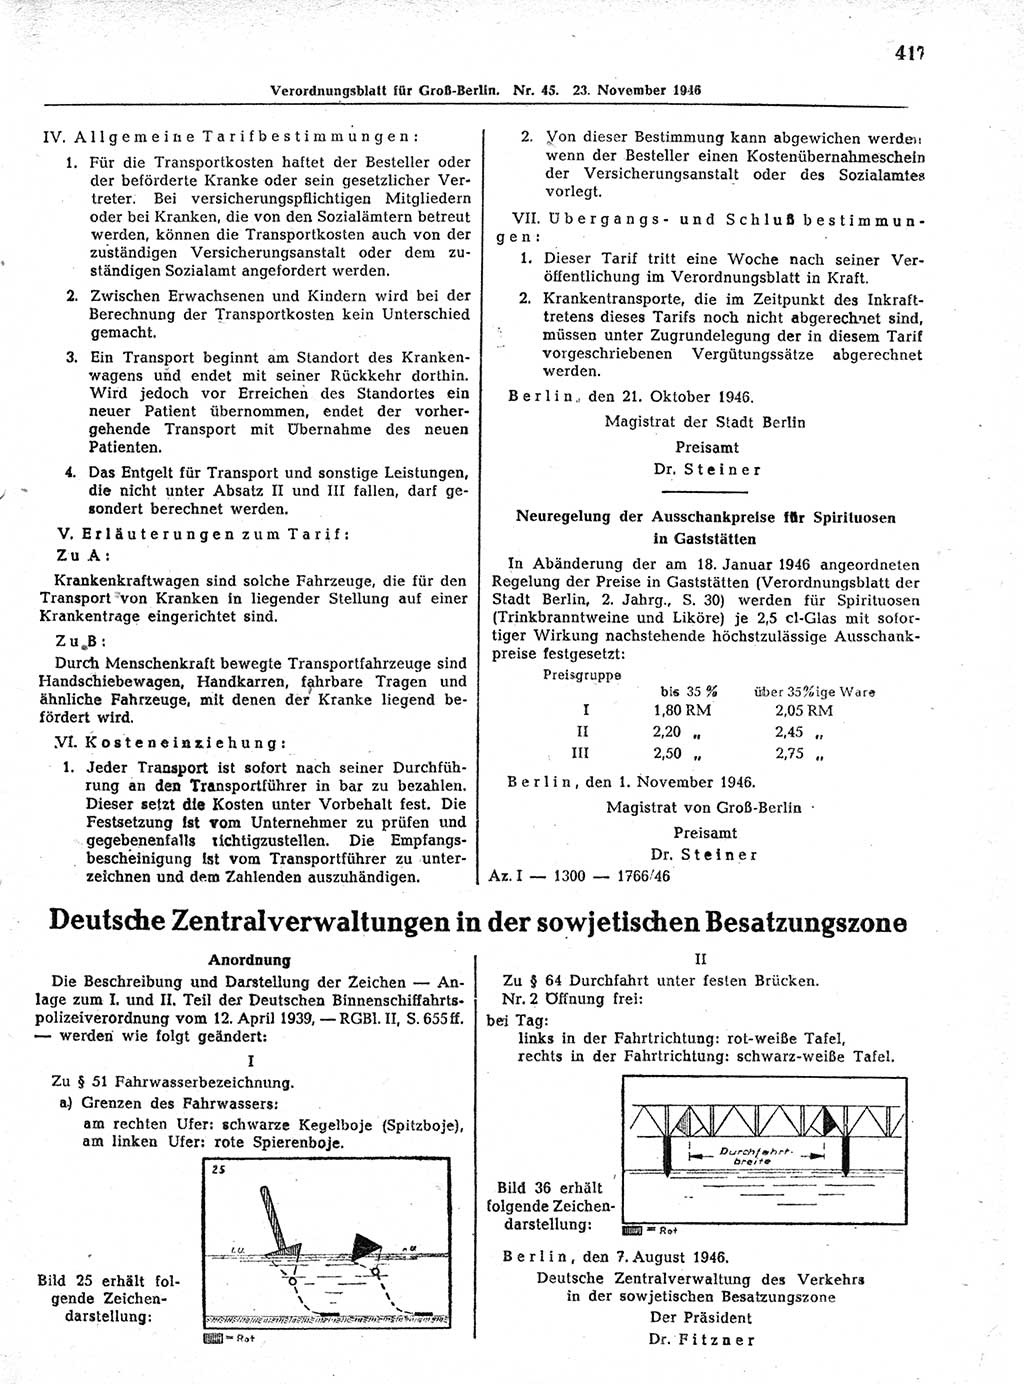 Verordnungsblatt (VOBl.) der Stadt Berlin, für Groß-Berlin 1946, Seite 417 (VOBl. Bln. 1946, S. 417)